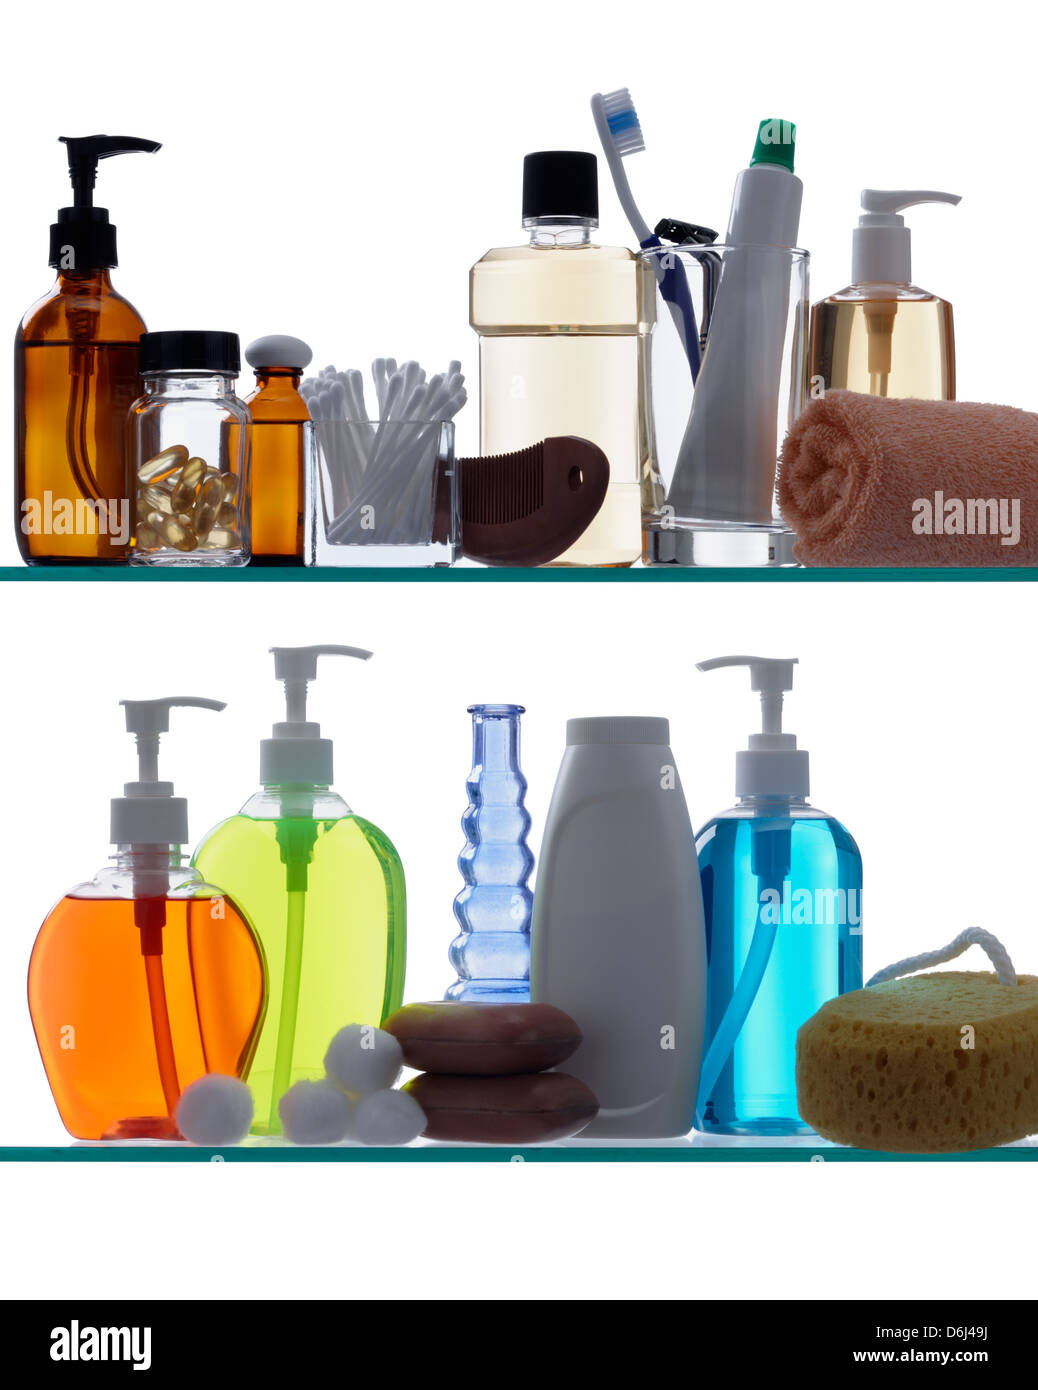 Productos de higiene personal en estantes de vidrio con retroiluminación Foto de stock